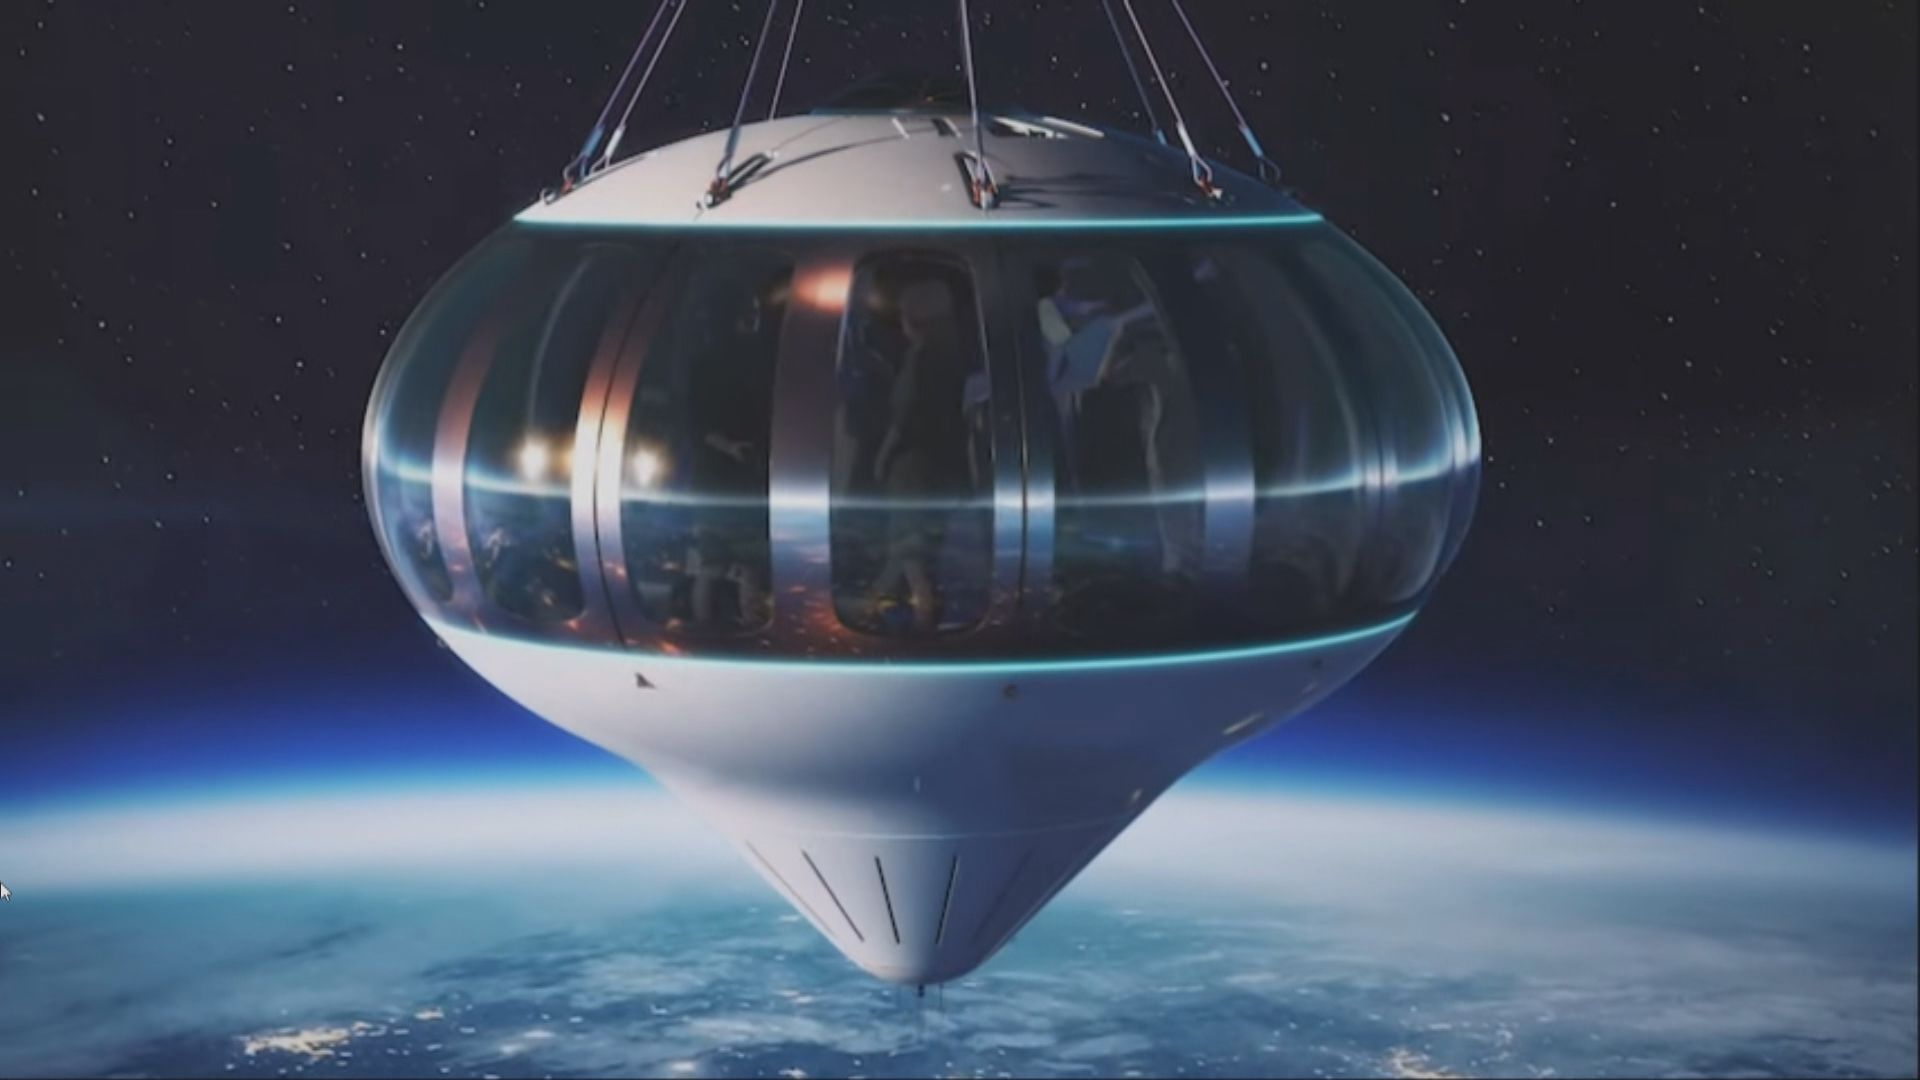 【環球薈報】熱氣球六小時太空旅程收費12.5萬美元